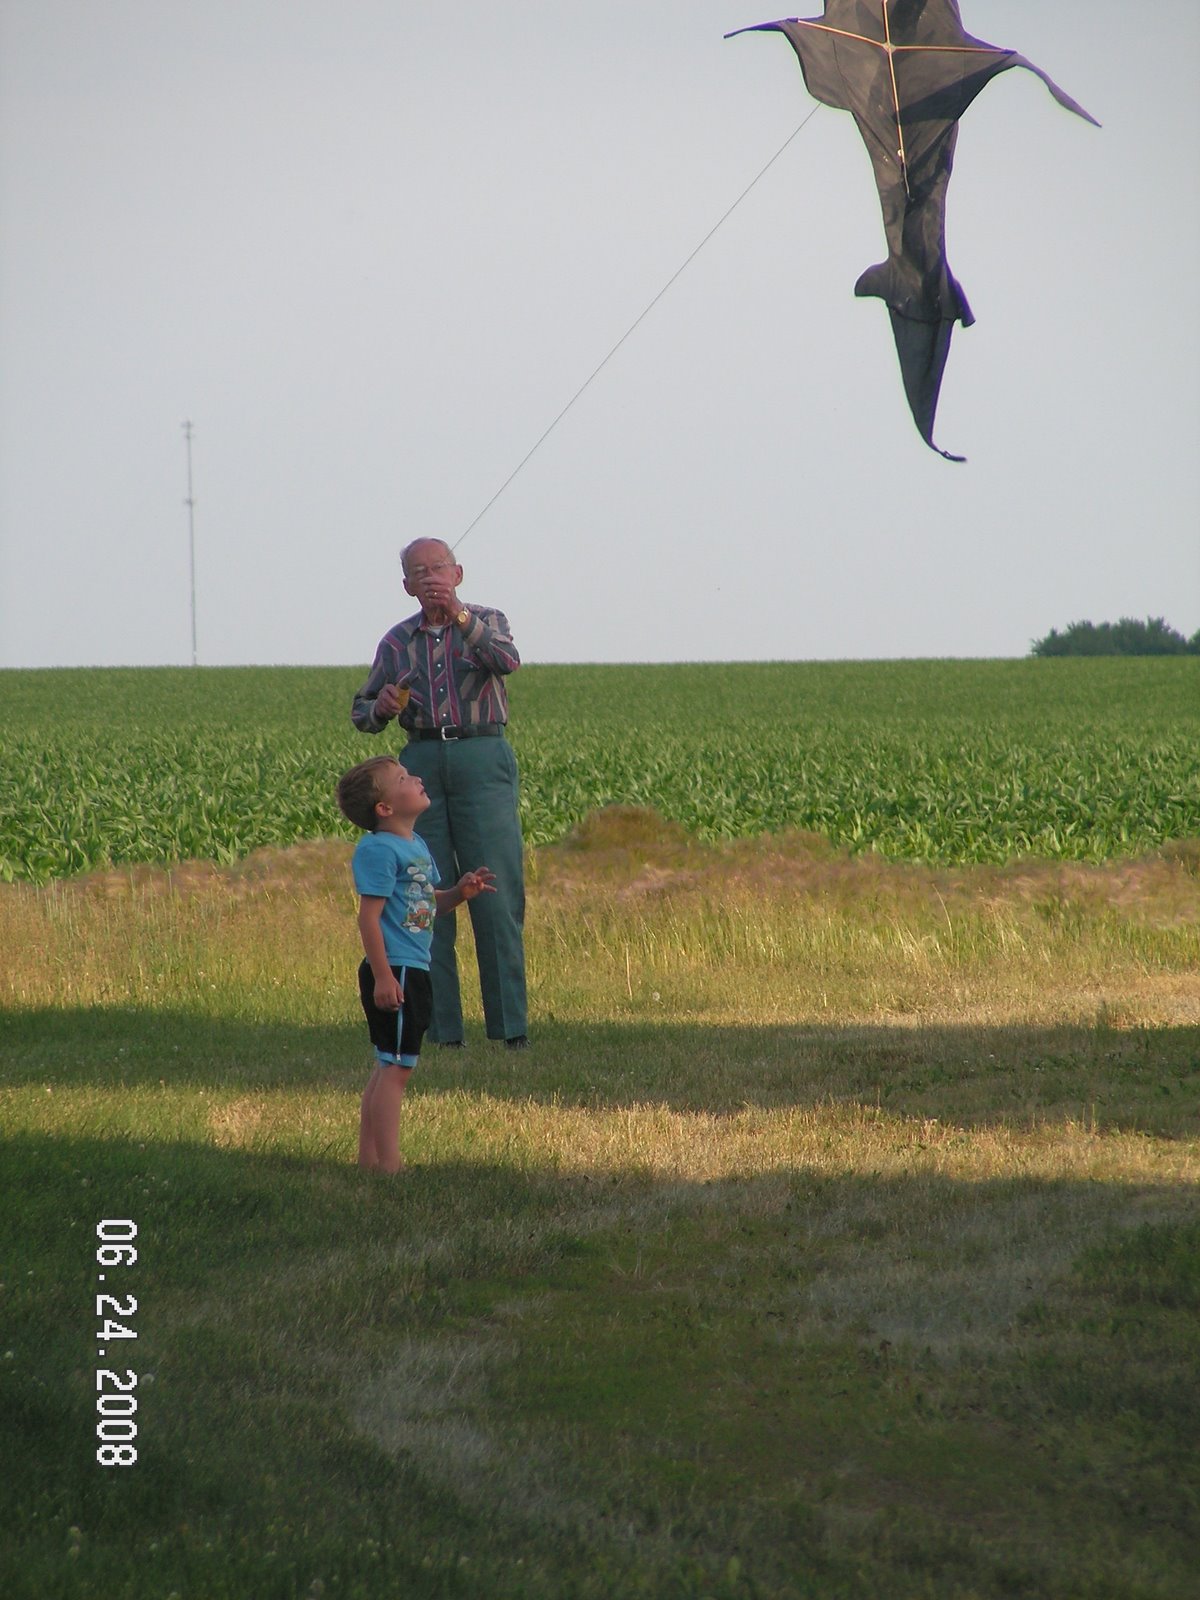 [ike&grandpa+with+kite.jpg]